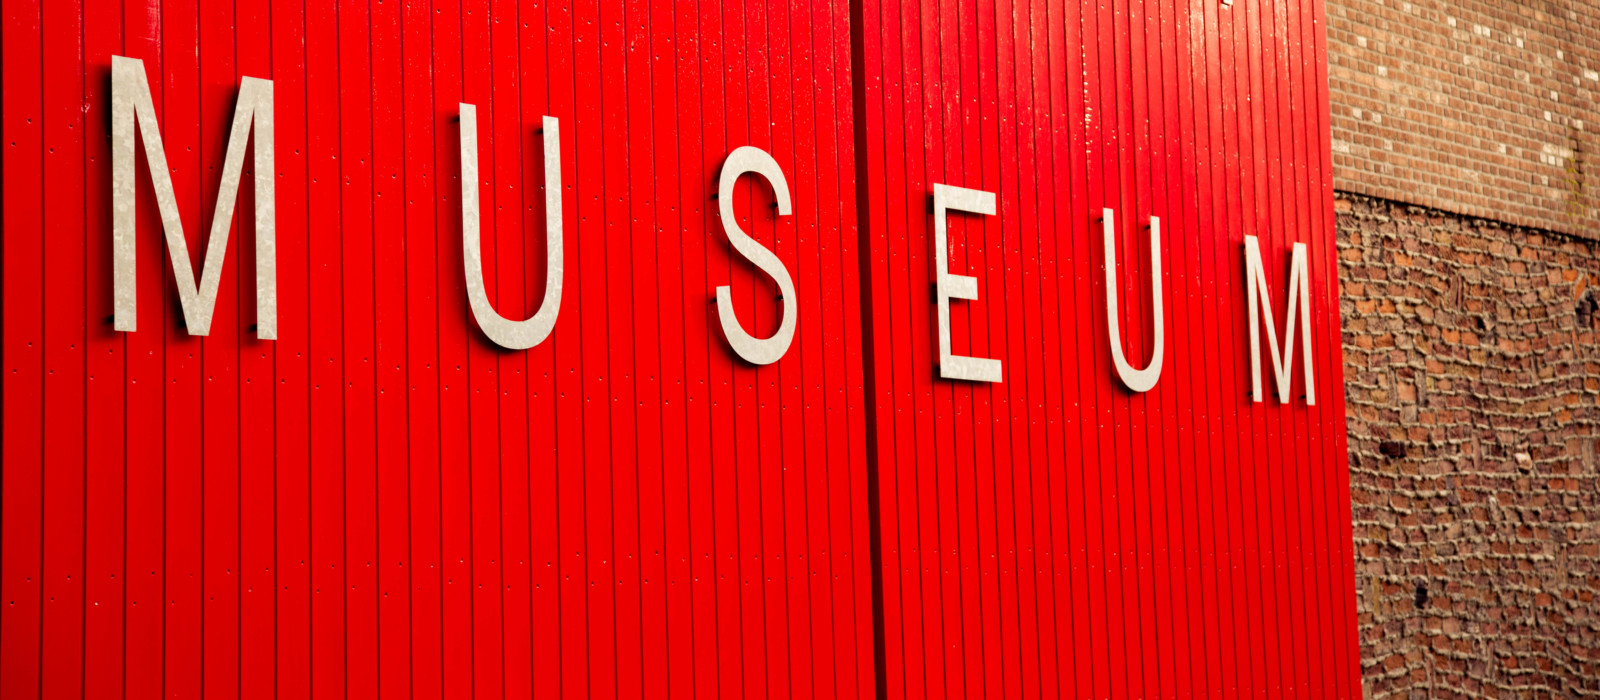 Fassade mit Museumsaufschrift auf rotem Grund